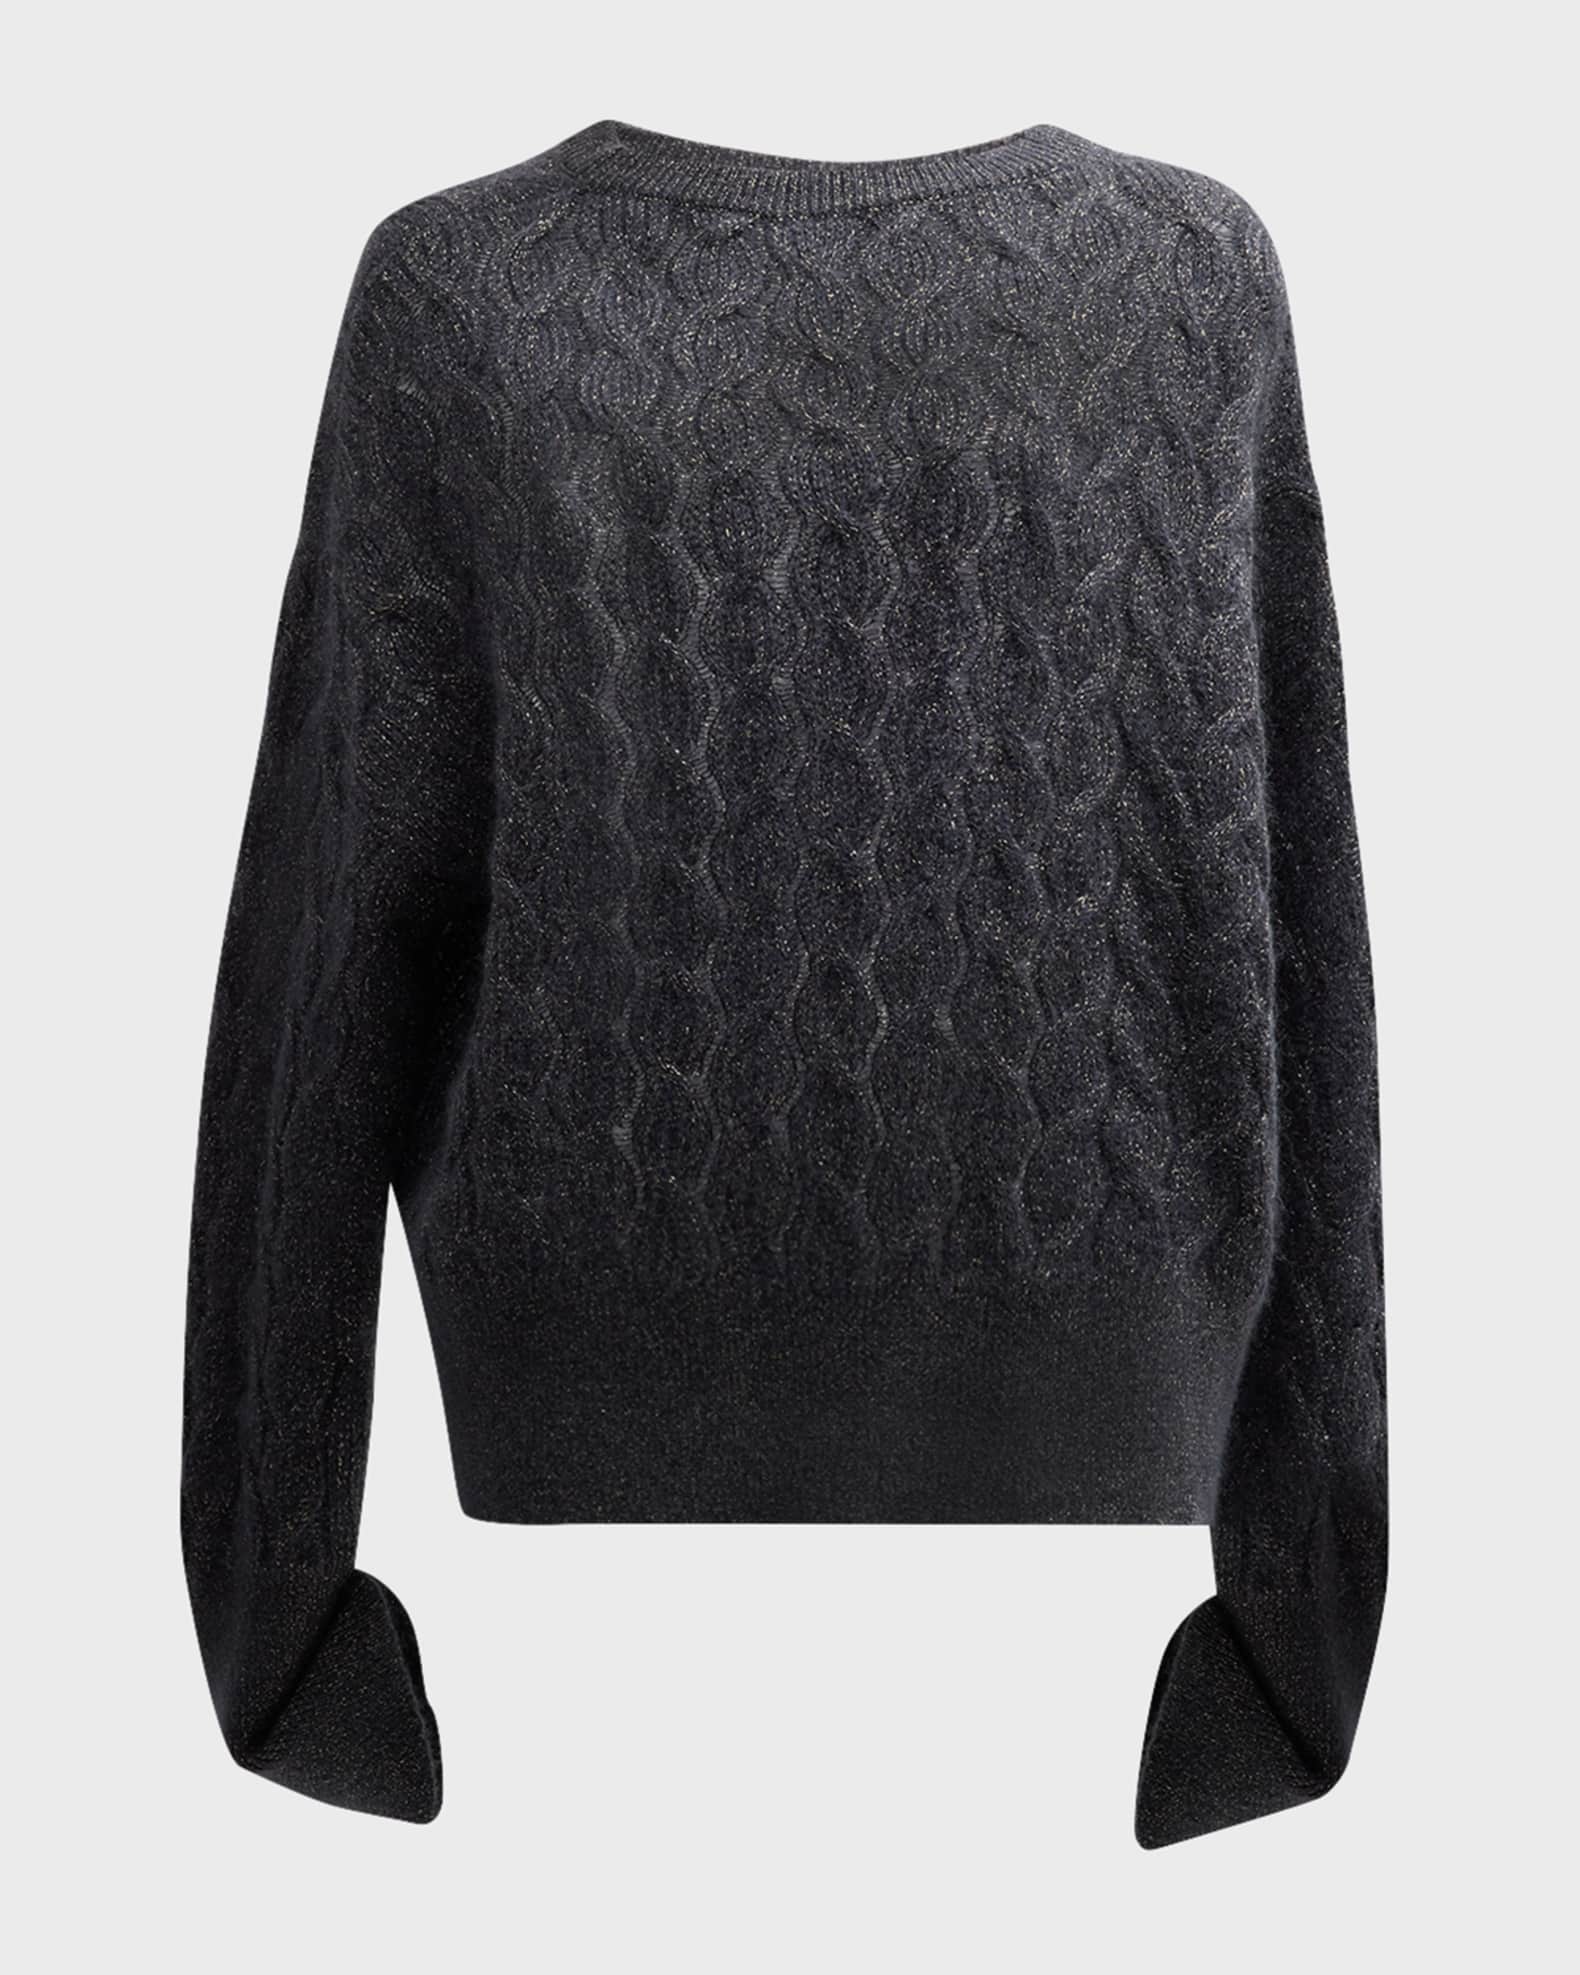 Unisex Vintage Louis Vuitton Open Knit Mohair Sweater